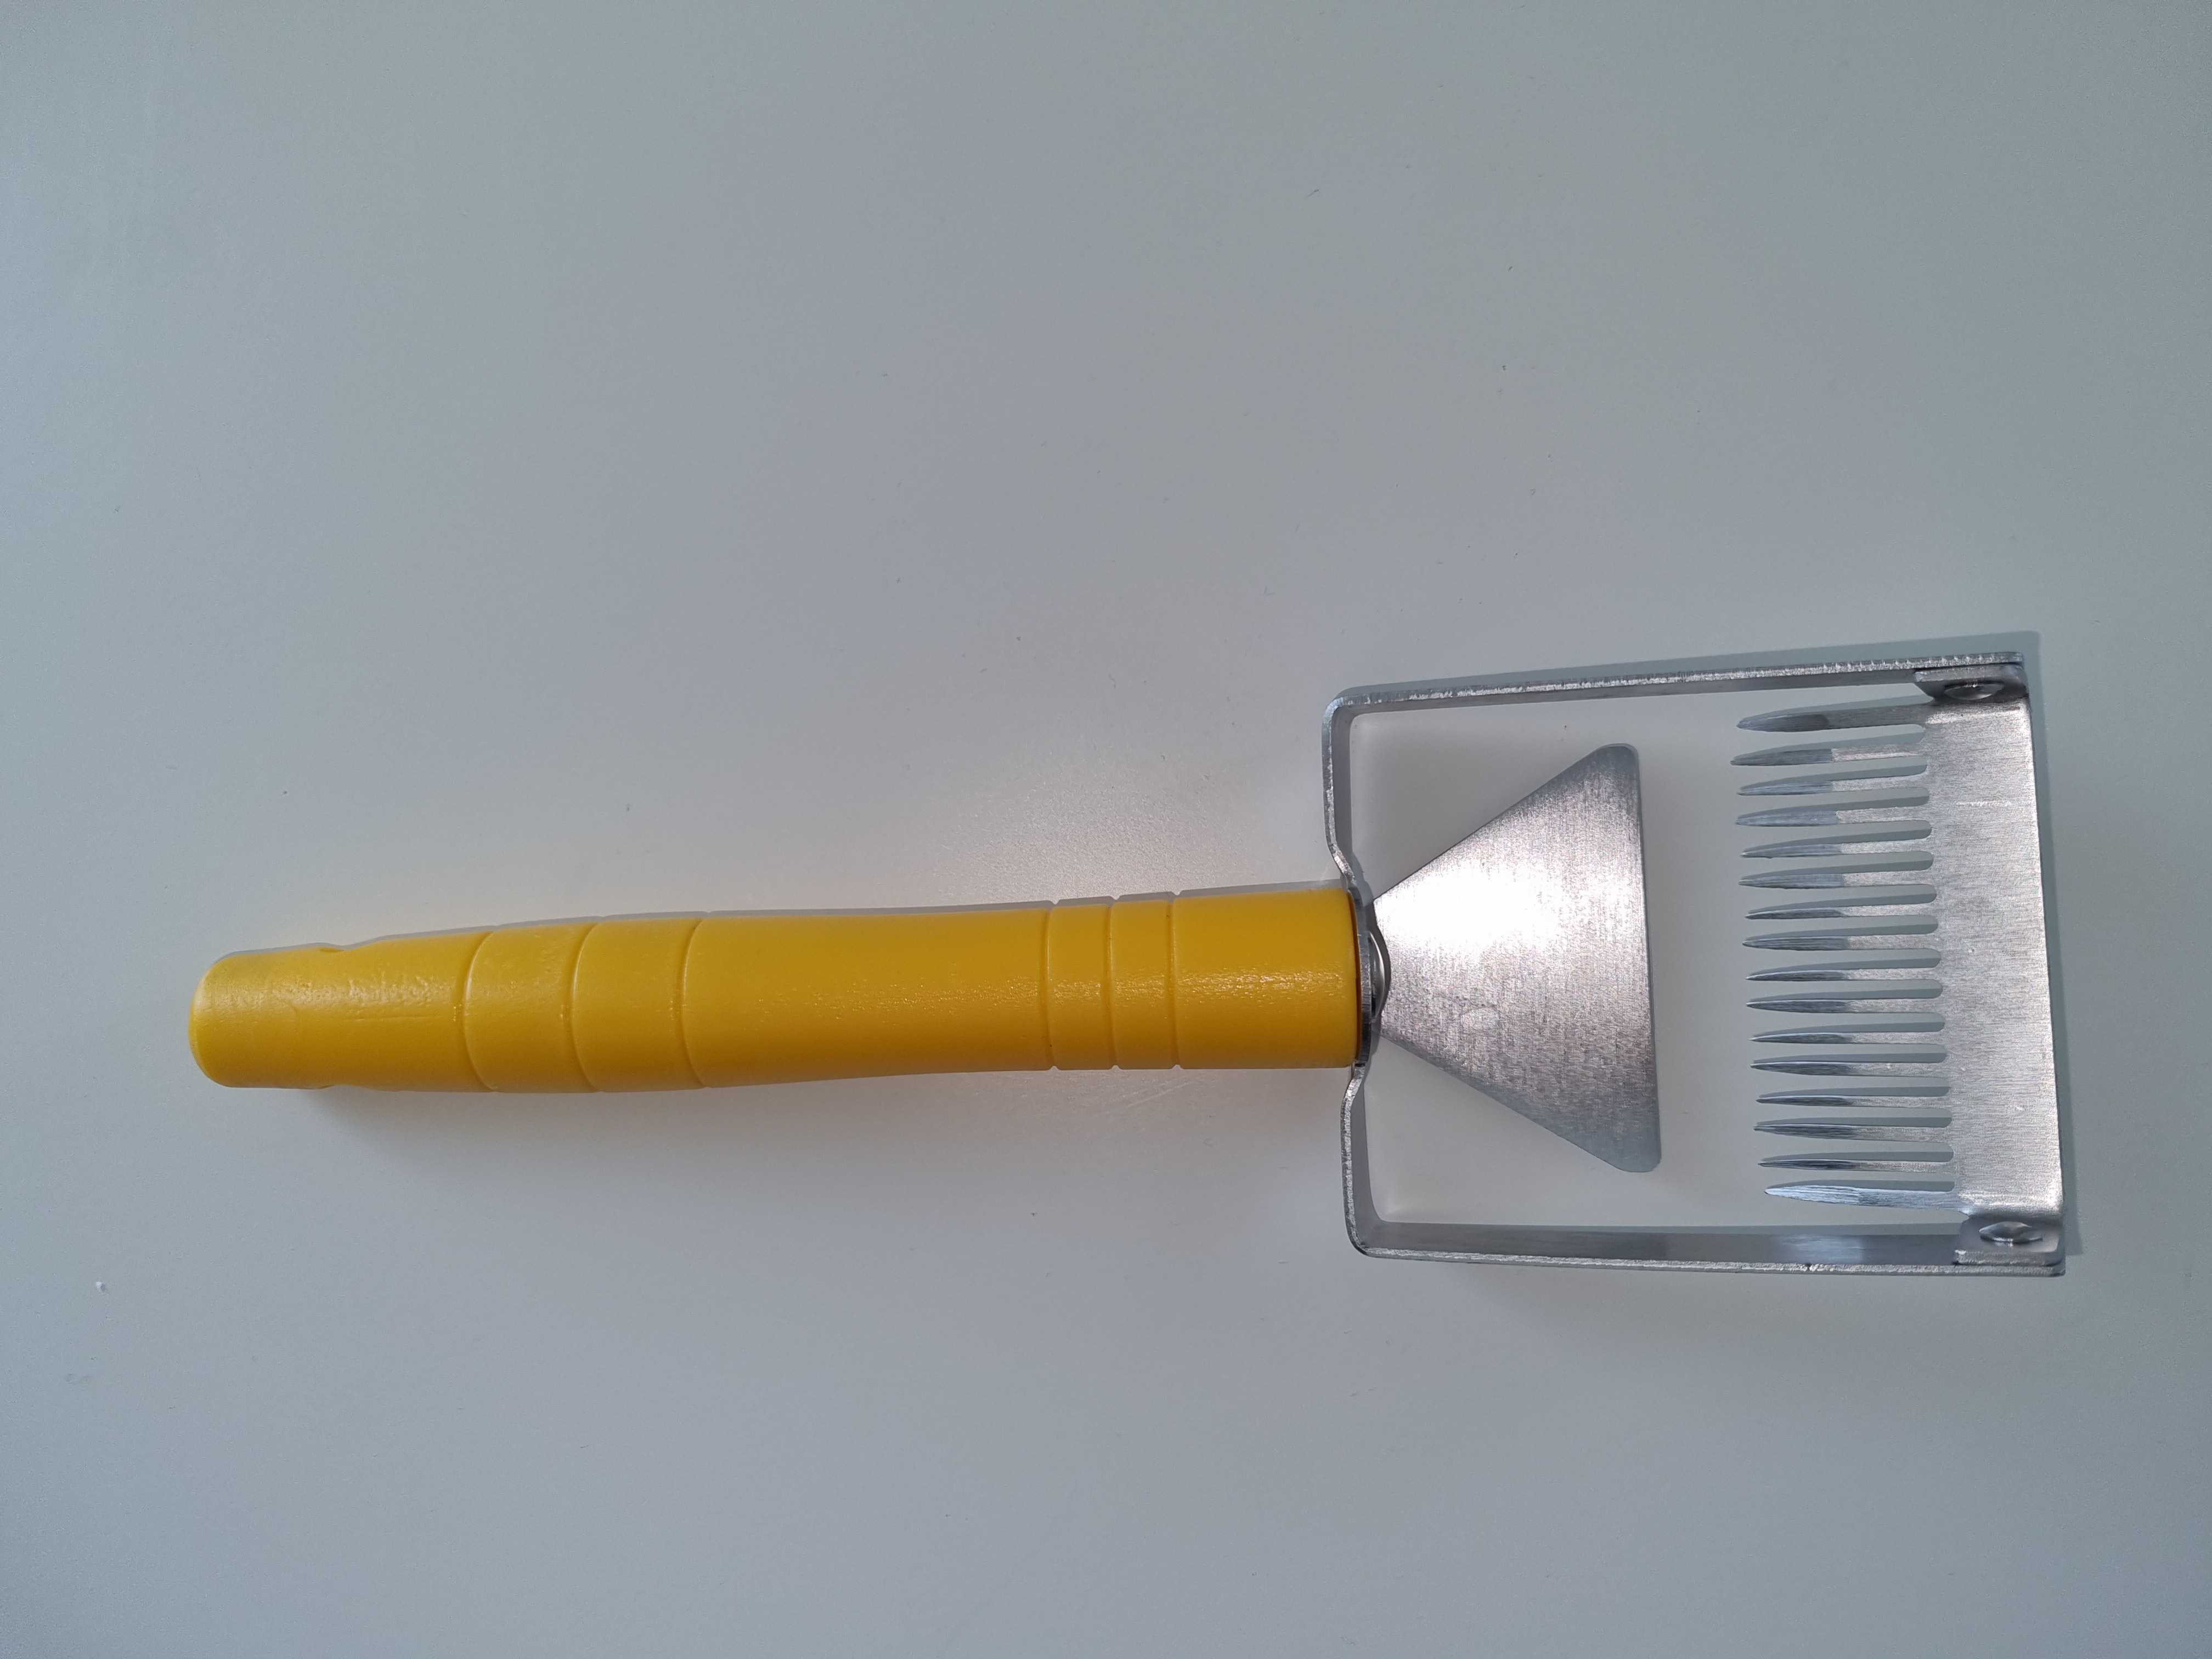 Entdeckelungsgabel mit Schaber und Kunststoffgriff gelb ca. 7,5 cm breit